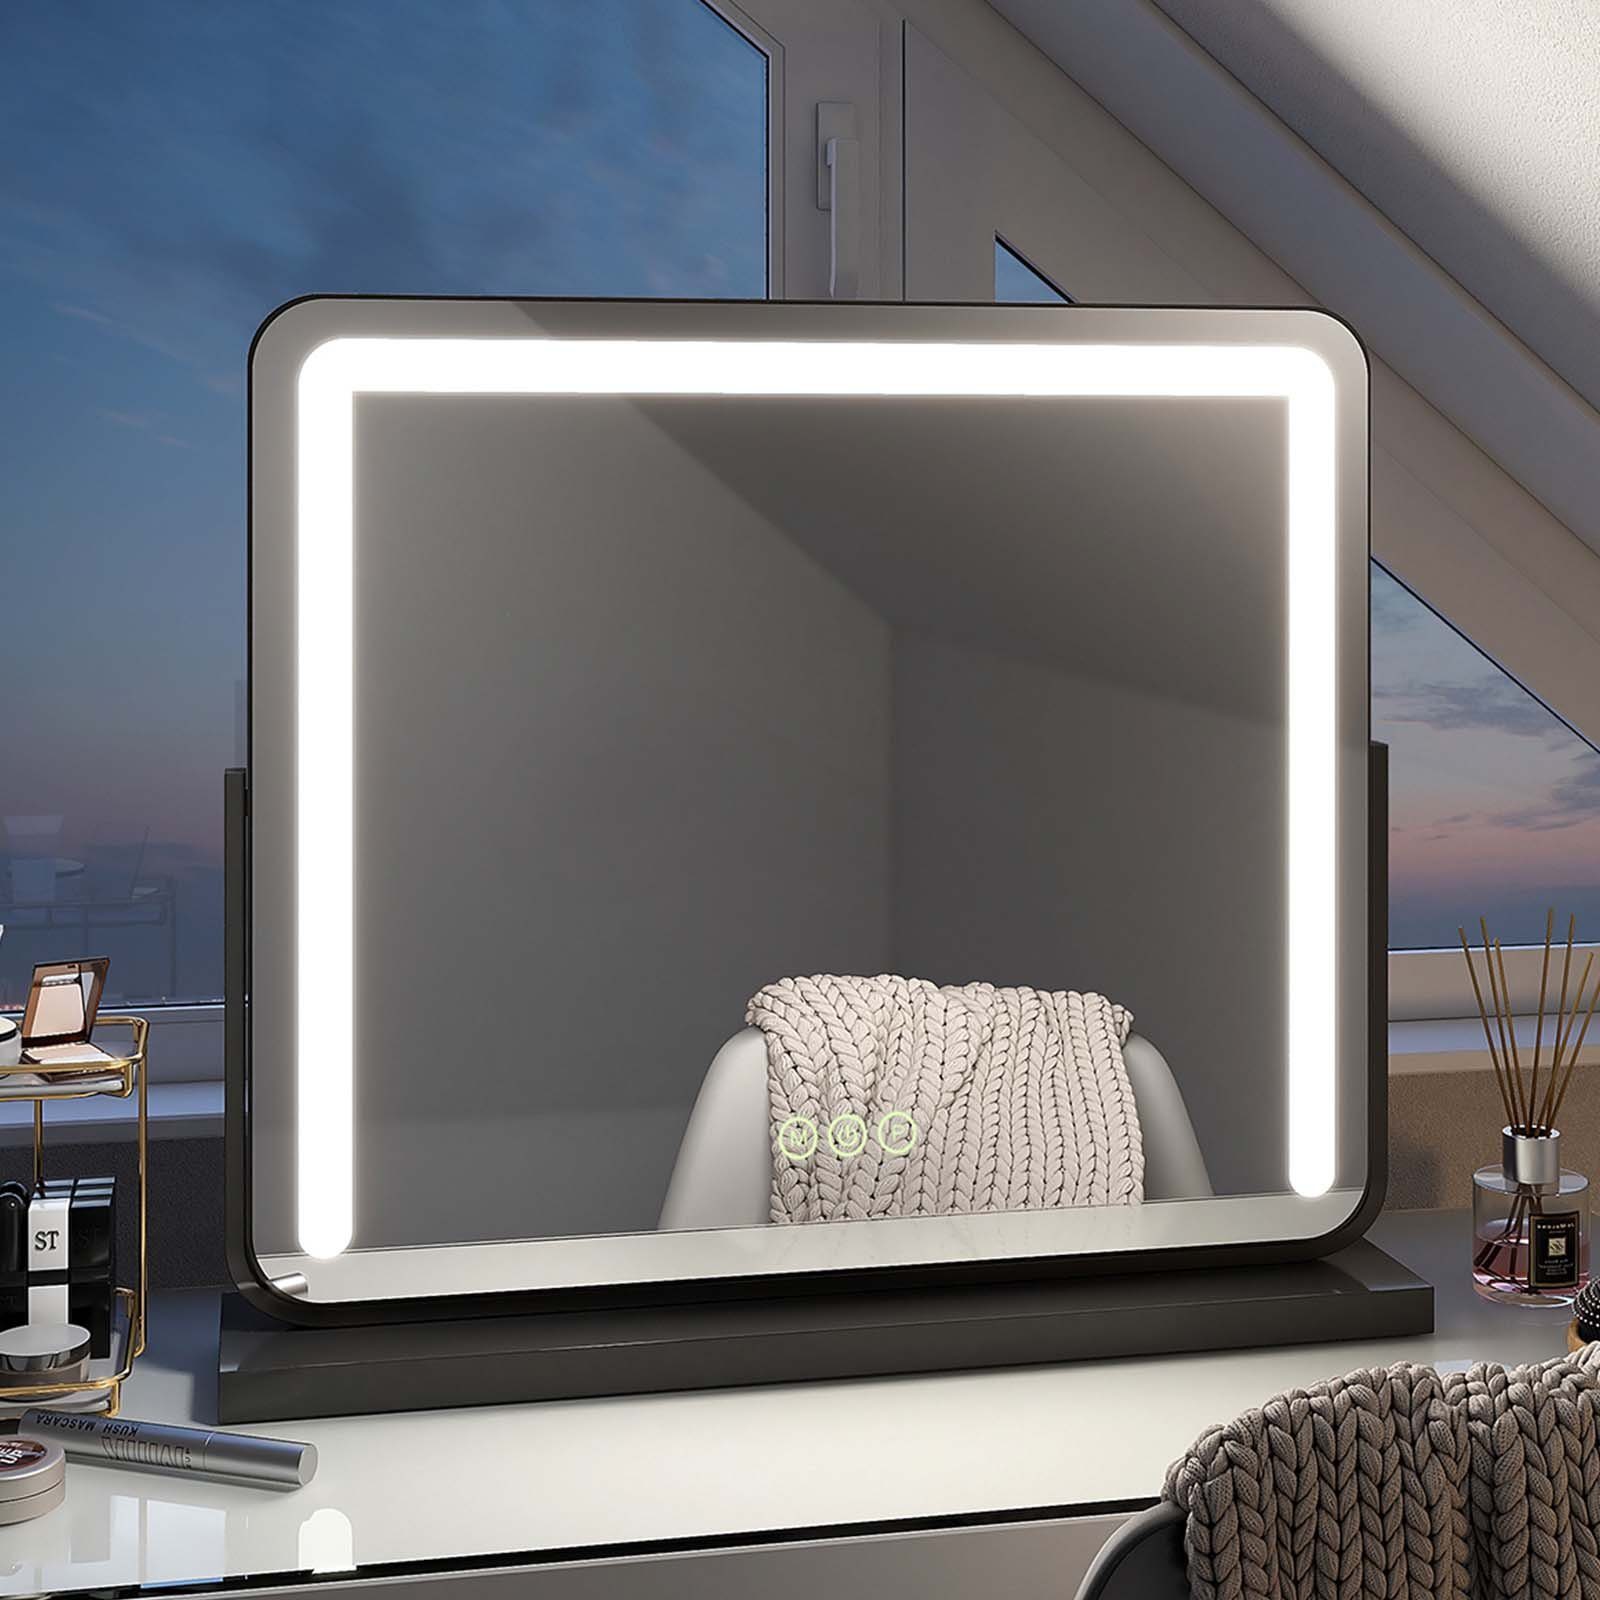 EMKE Schminkspiegel Schminkspiegel LED Kosmetikspiegel Tischspiegel mit Beleuchtung, 3 Lichtfarben, Memory-Funktion, Wandmontage/Standfuß